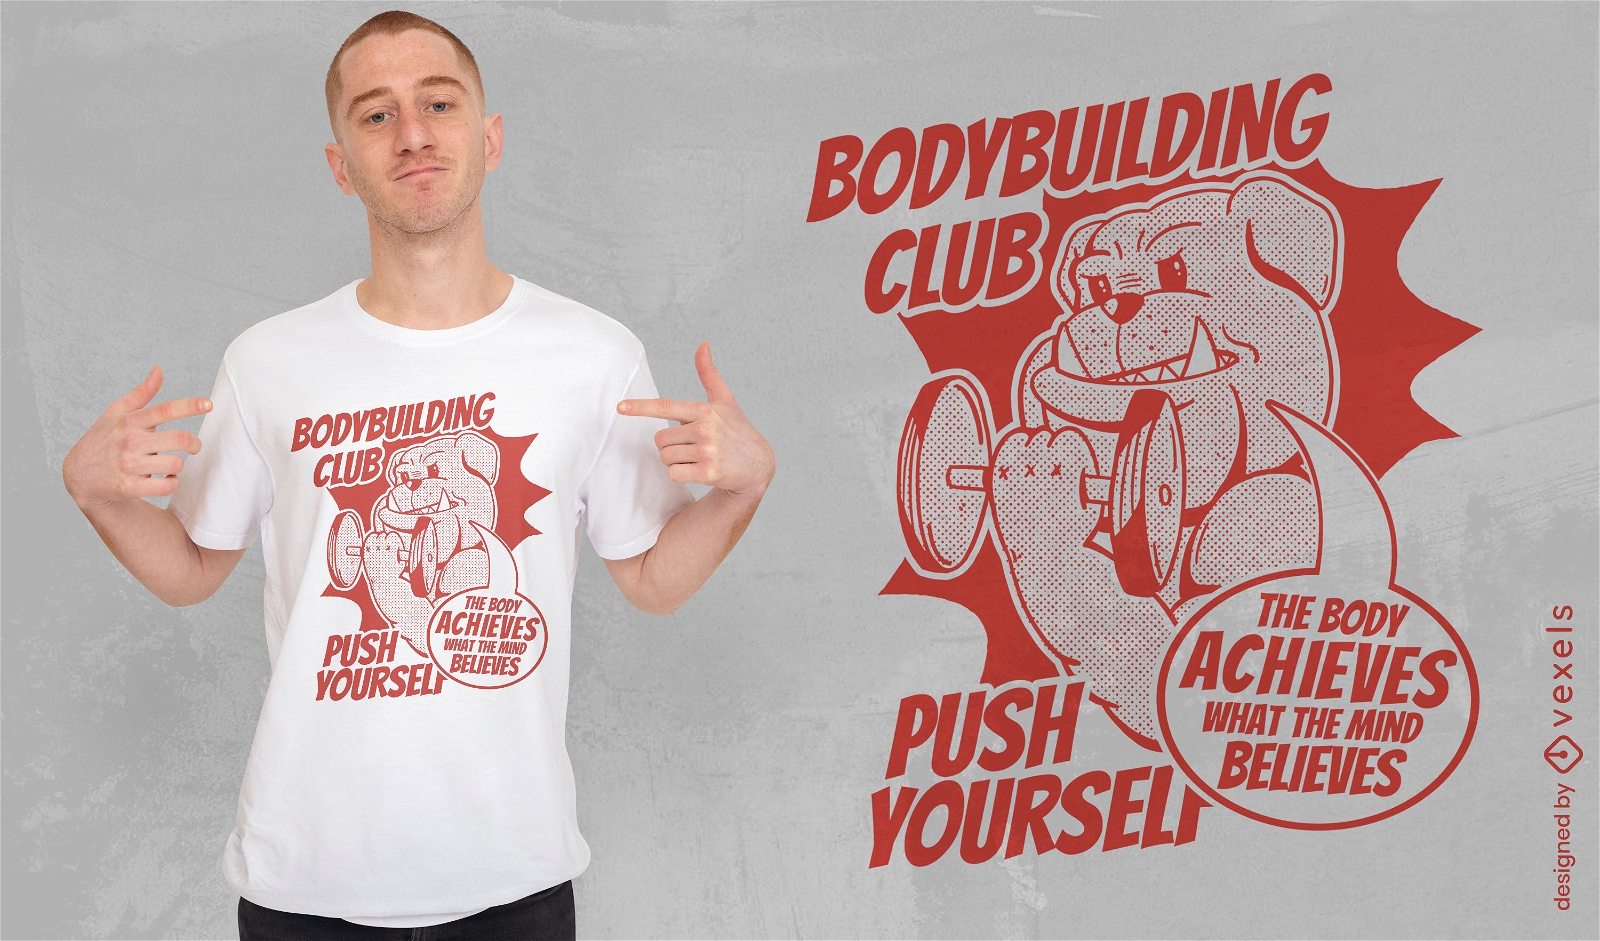 Bodybuilding club bulldog t-shirt design